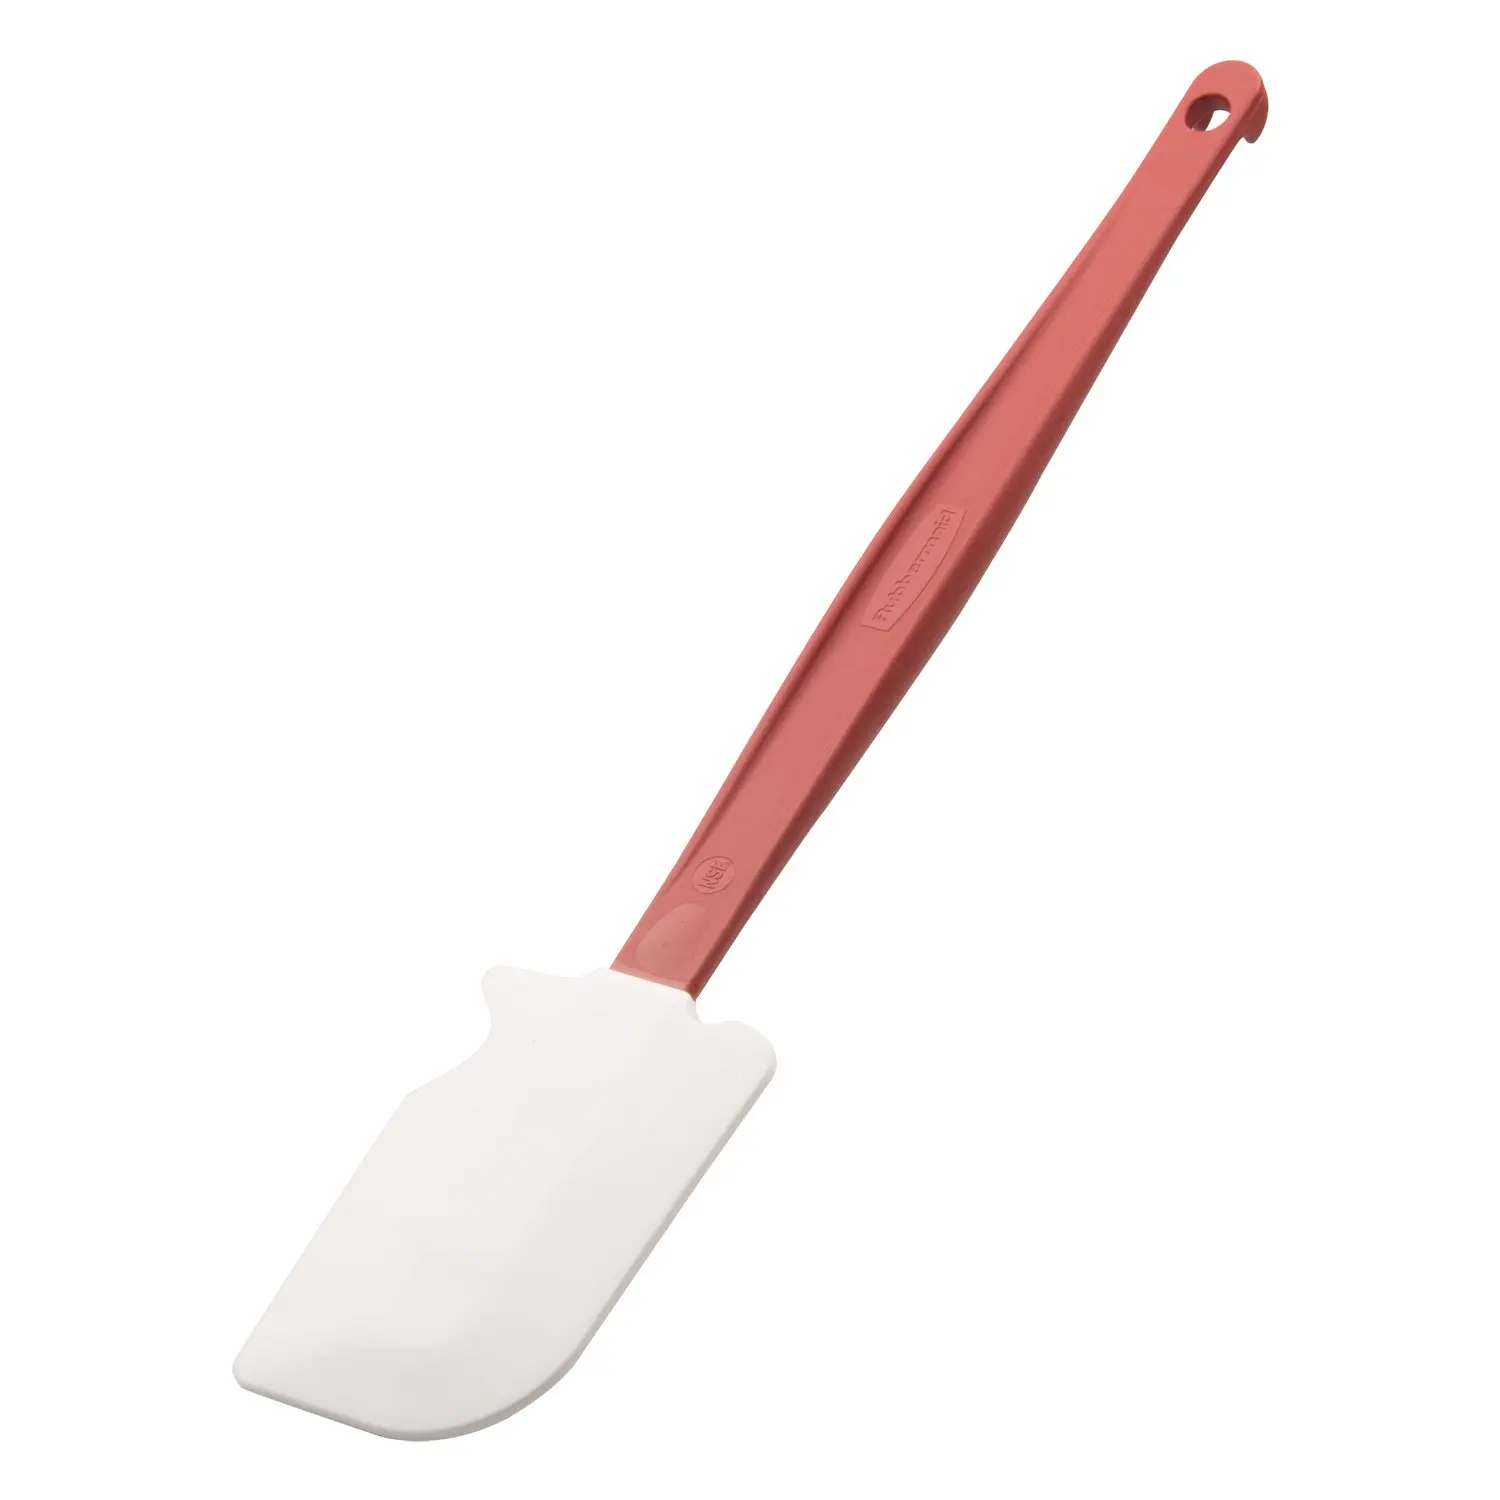 rubbermaid rubber spatula